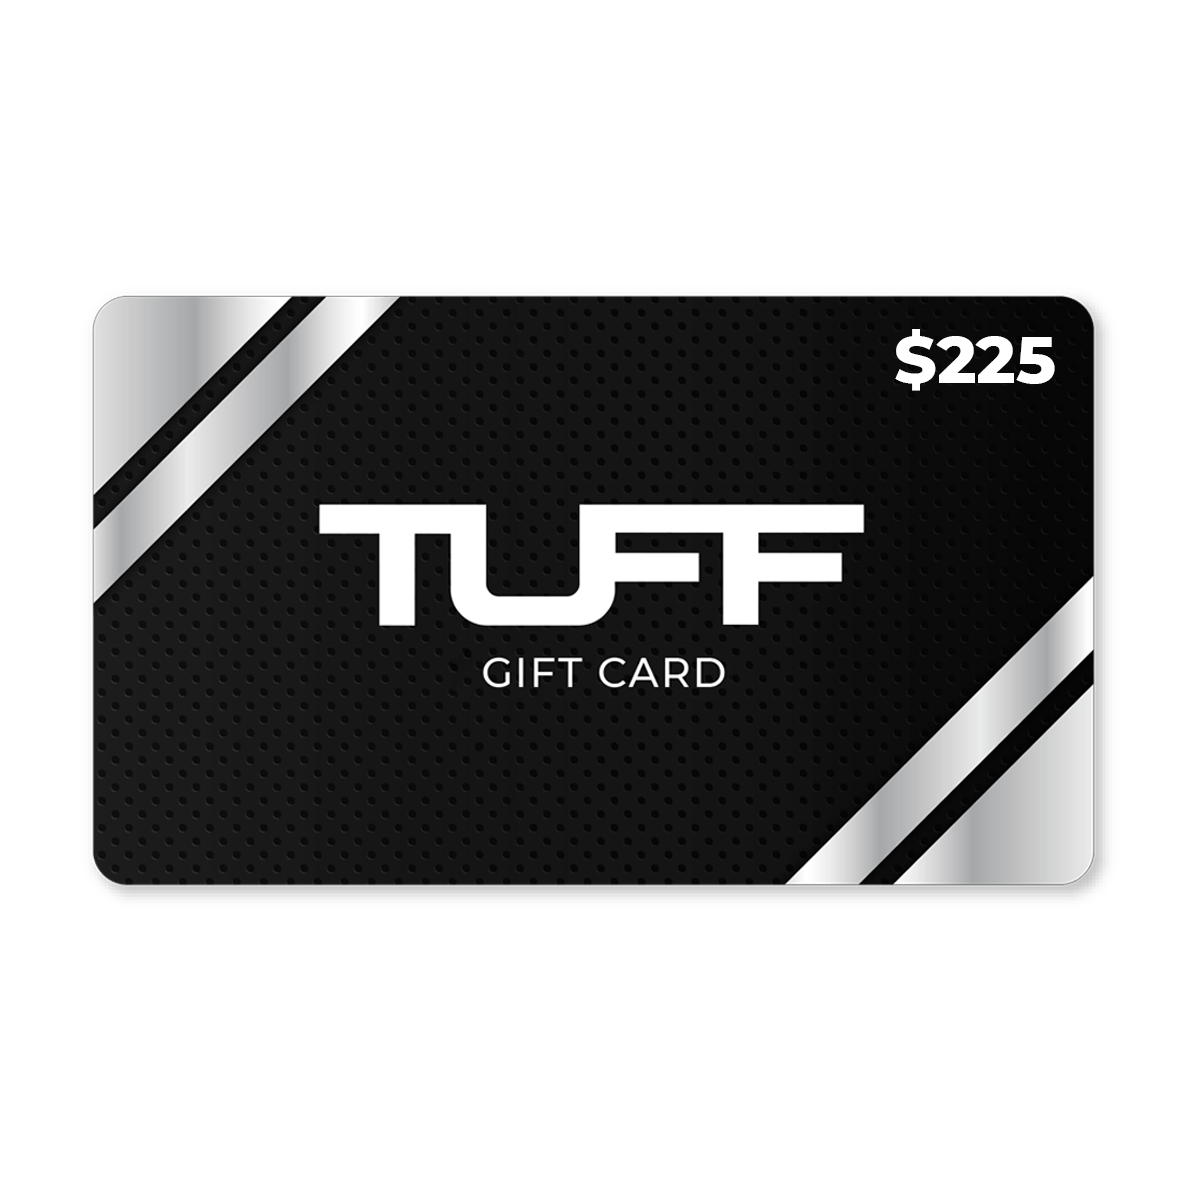 TuffWraps Gift Card $225.00 TUFF Gift Card